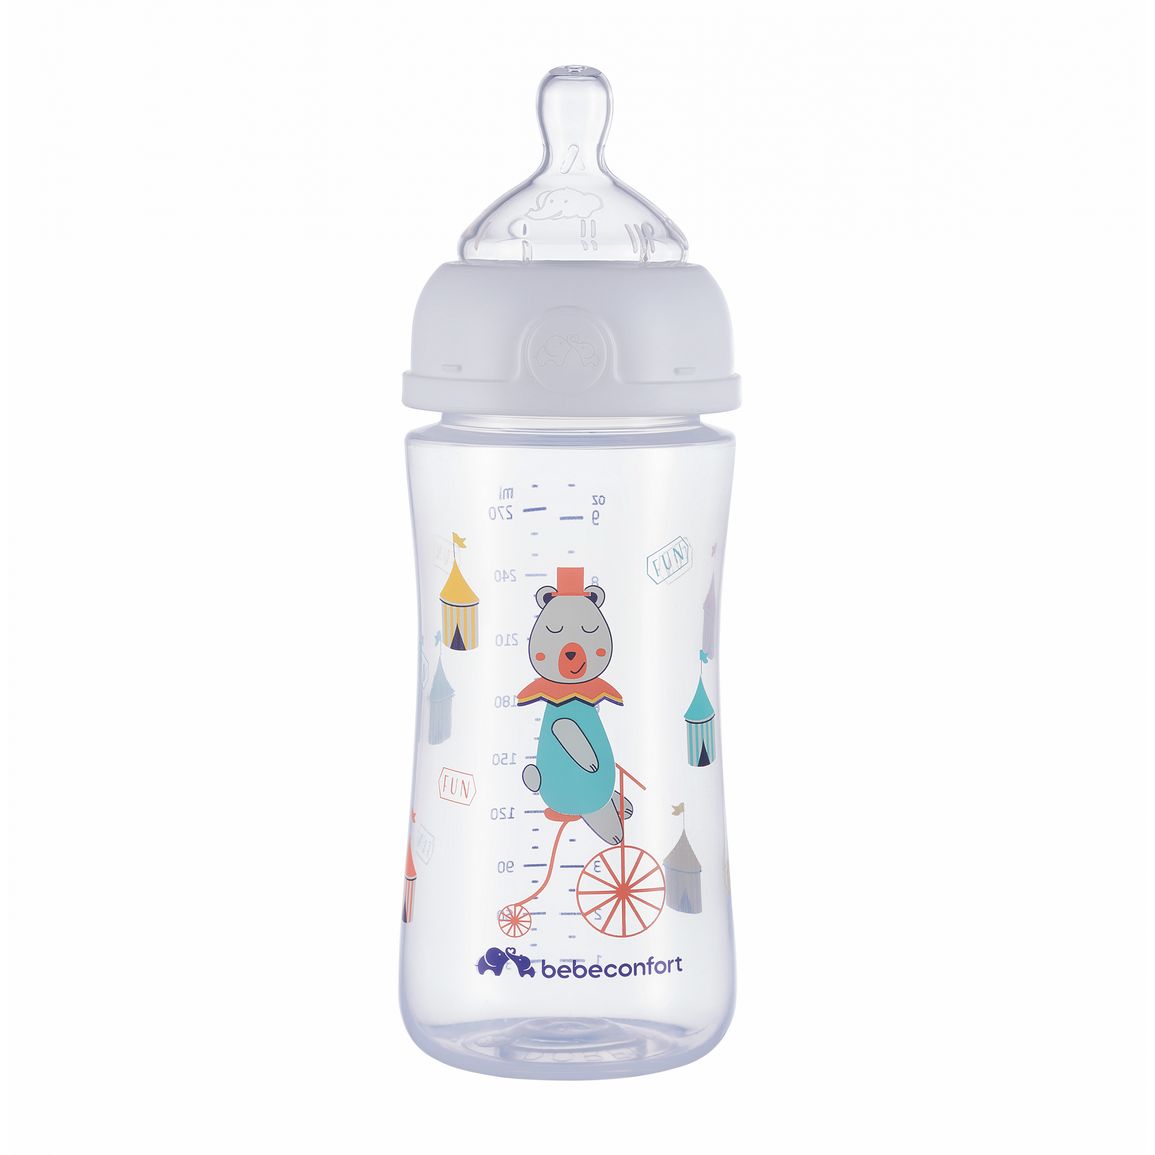 Dojčenská fľaša Emotion 270ml 0-12m White